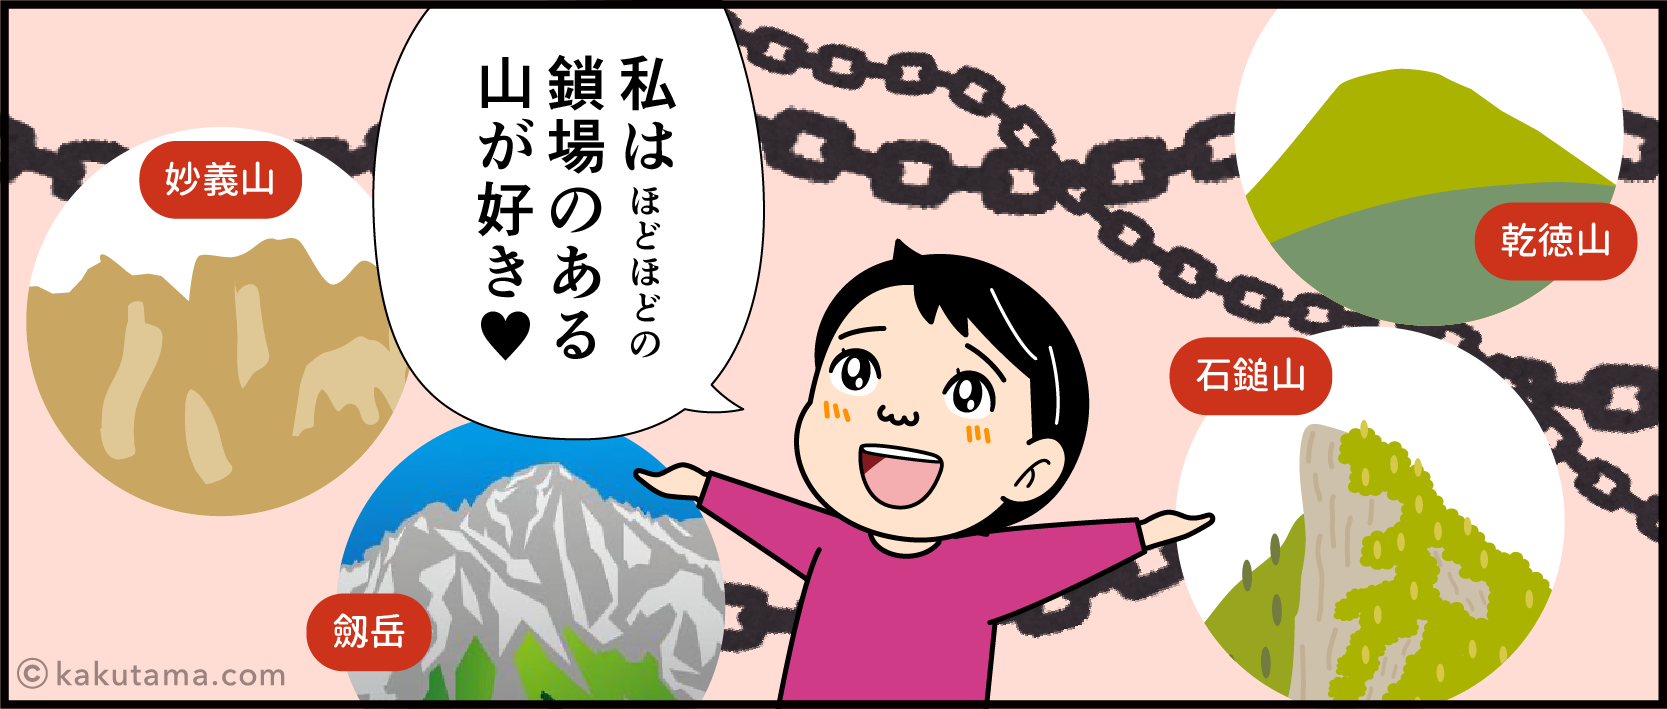 奥久慈男体山へ登ろうと思ったキッカケの漫画